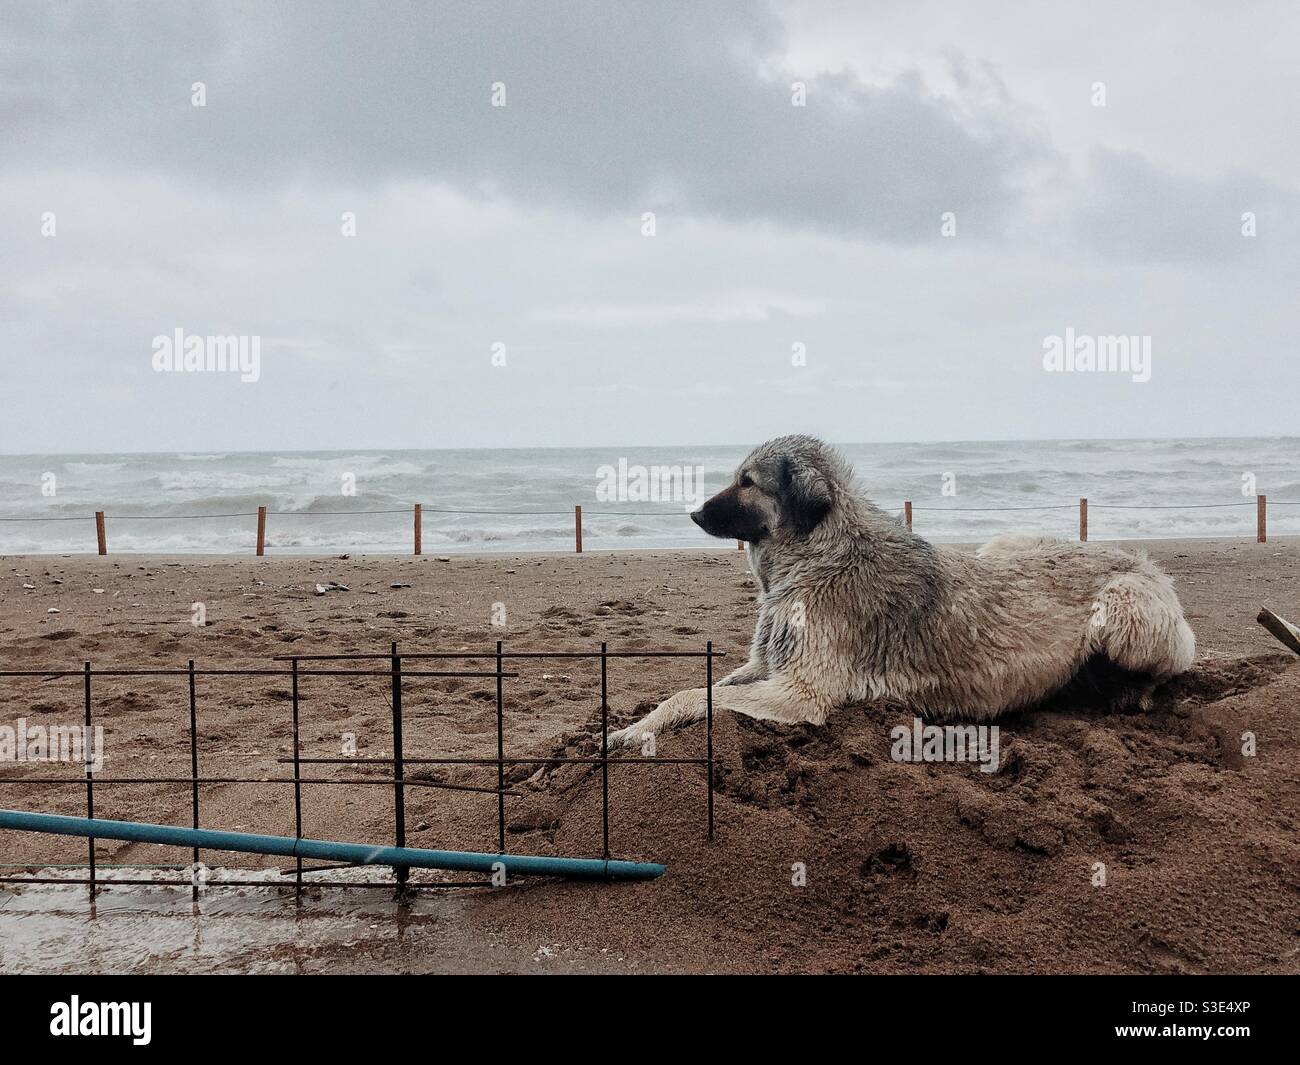 Stray dog sitting on sandy beach Stock Photo